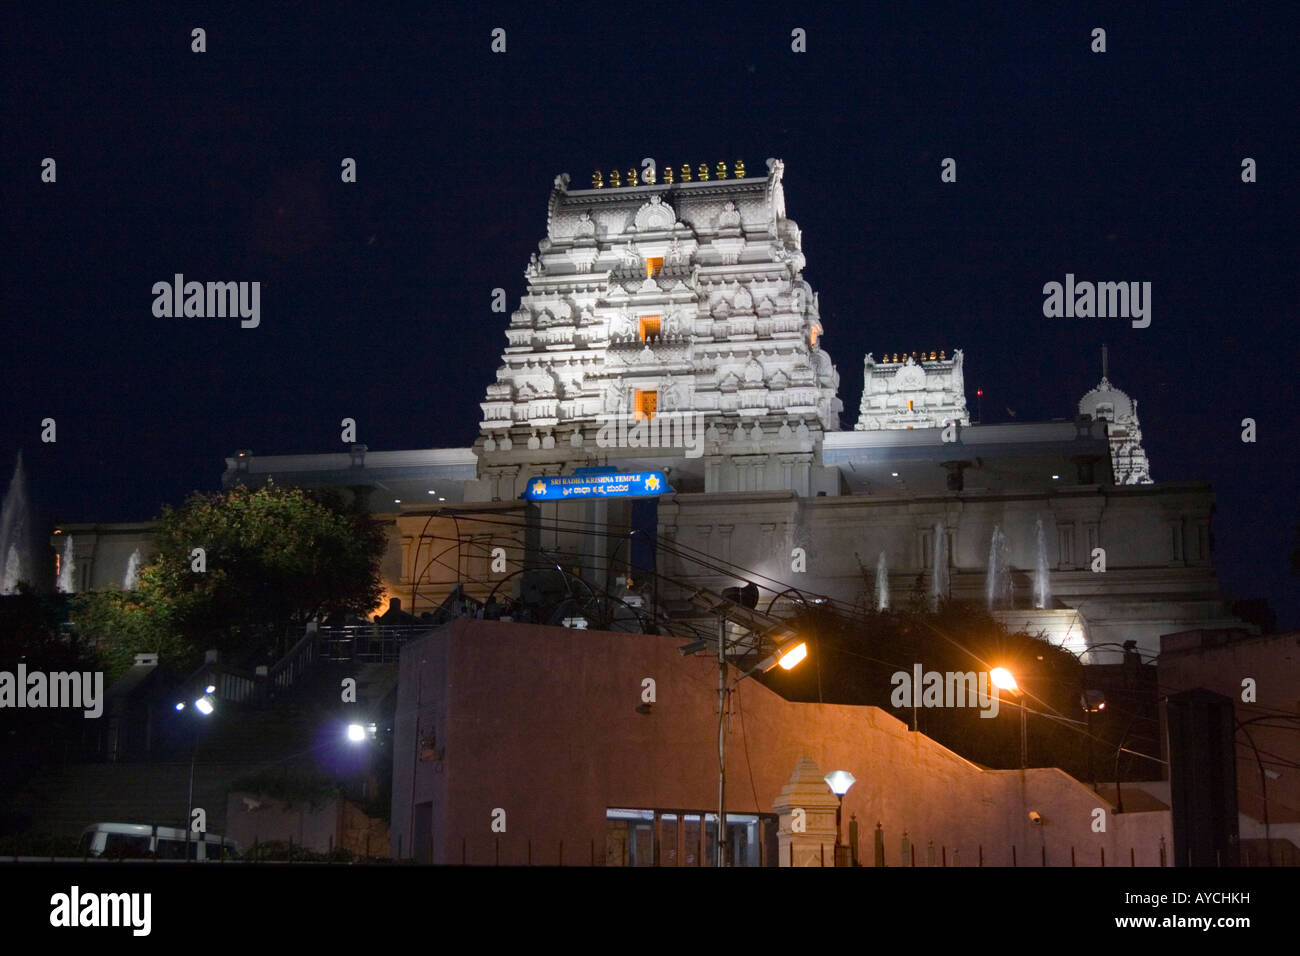 Le Temple ISKCON à Bangalore Inde dédié au dieu Krishna et construite sur la colline de Hare Krishna Banque D'Images